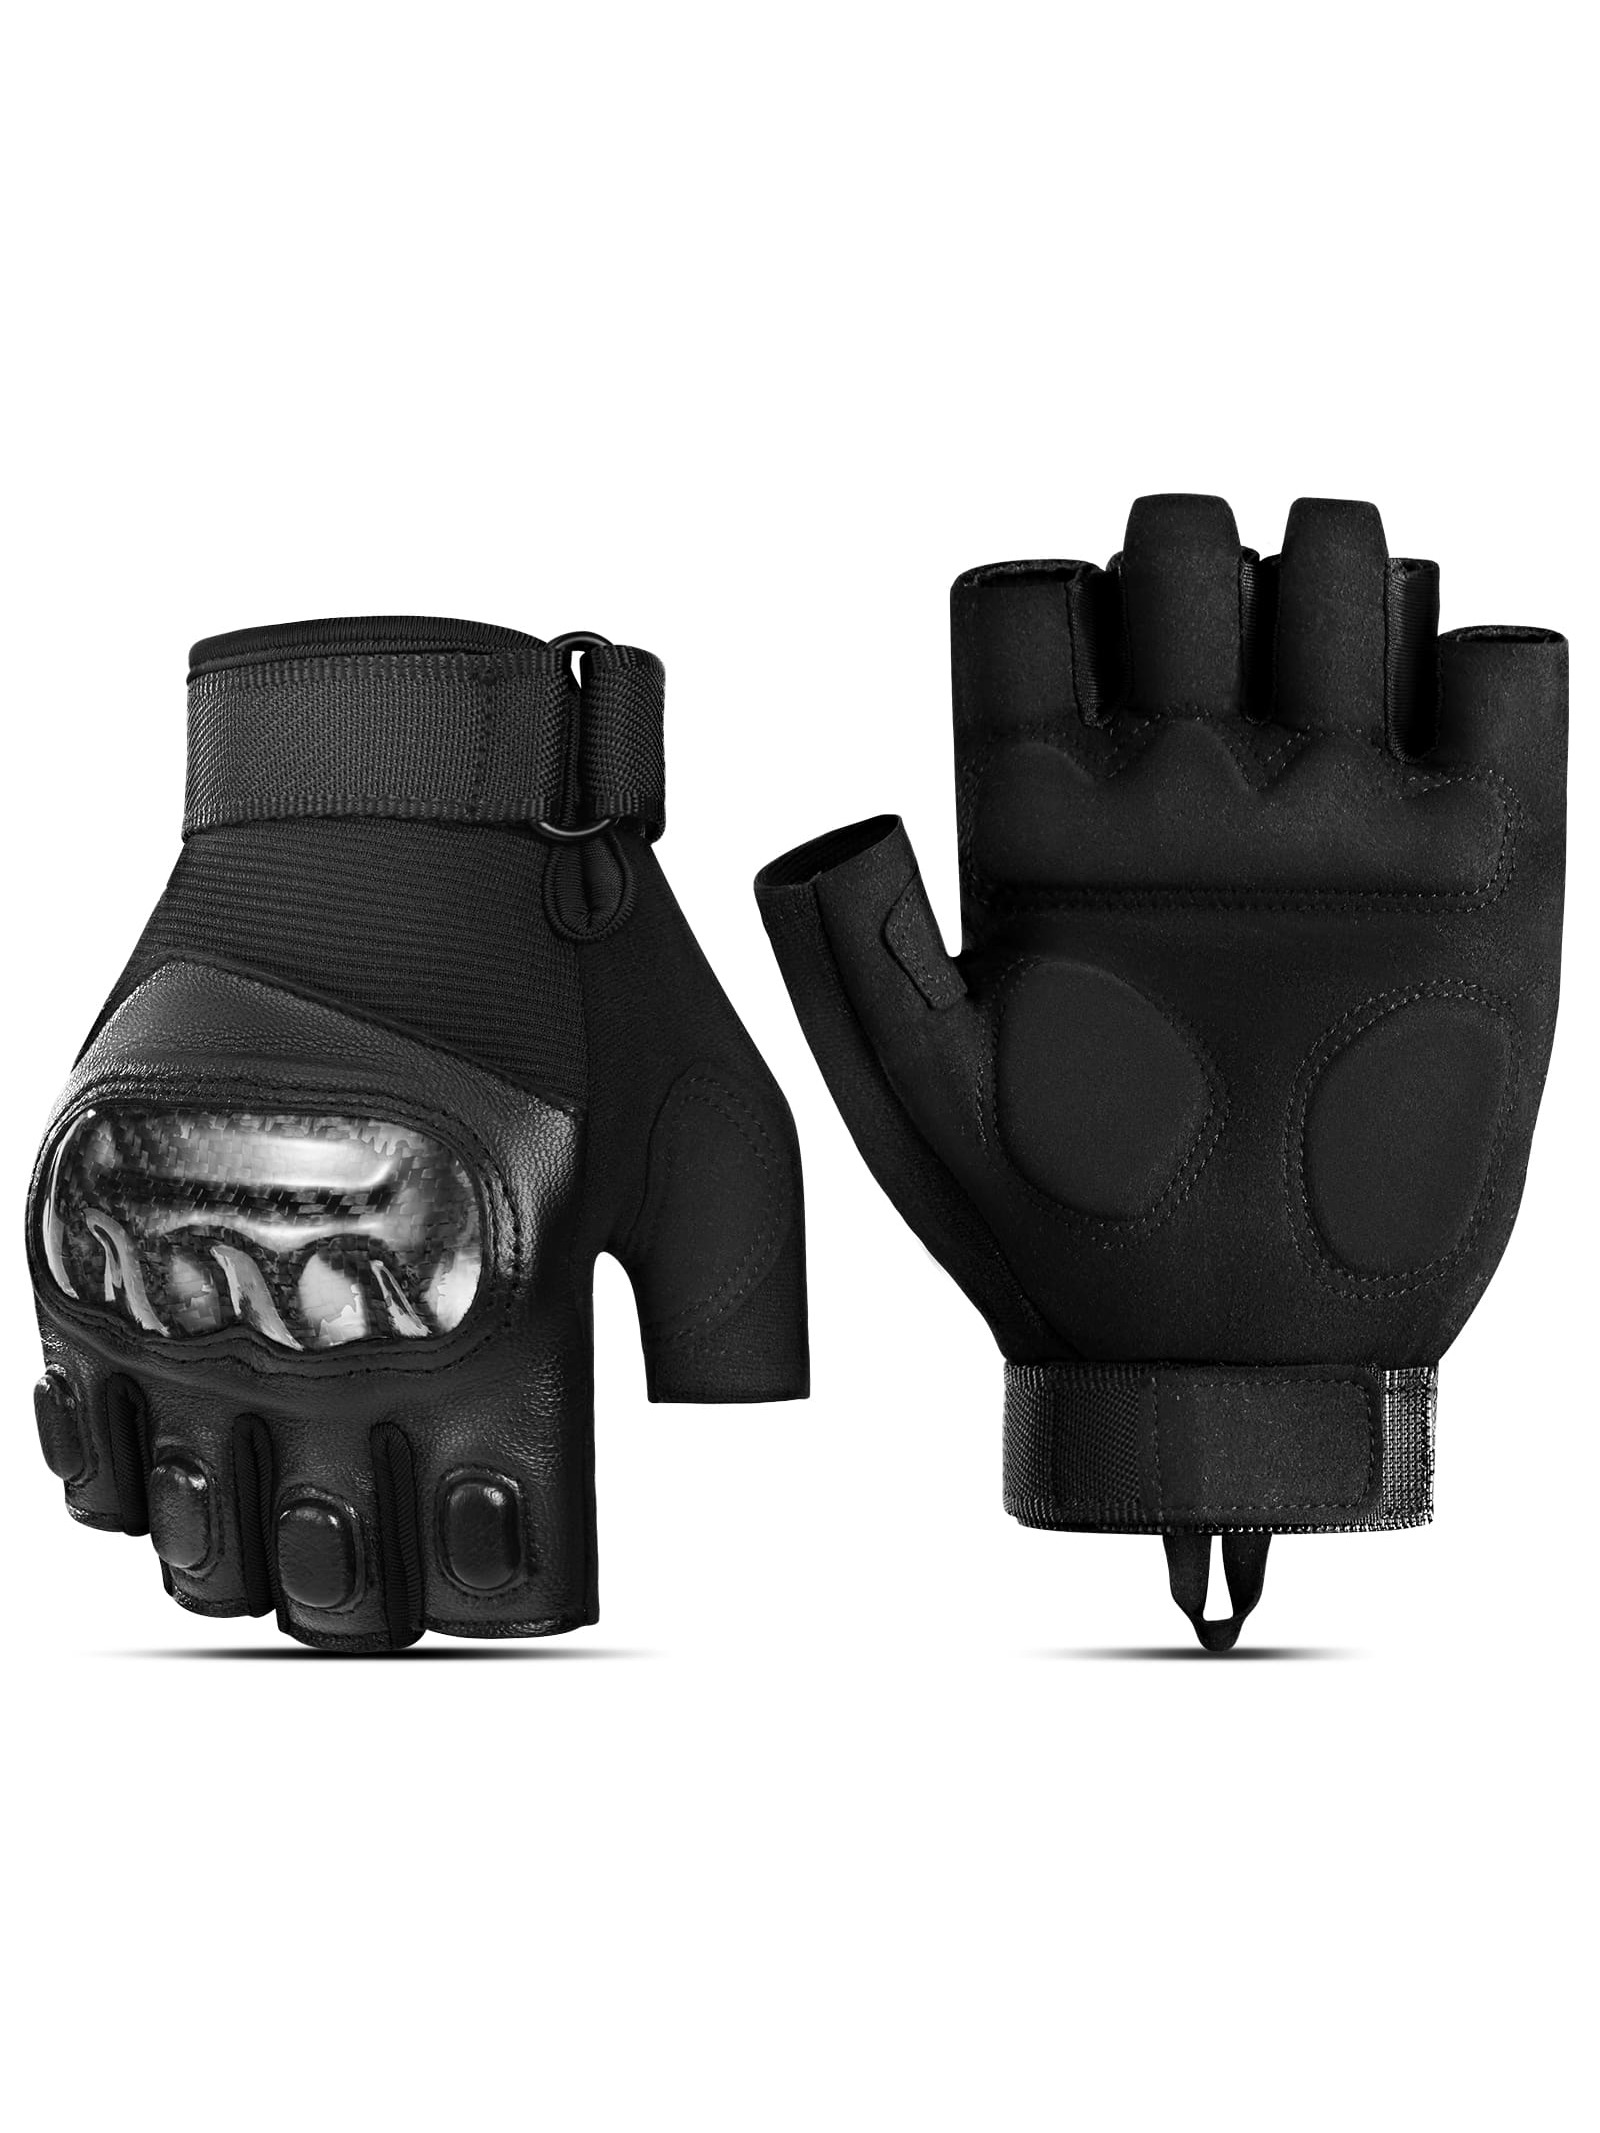 Мотоциклетные велосипедные перчатки ATARNI с половиной пальца: защита костяшек пальцев, черный